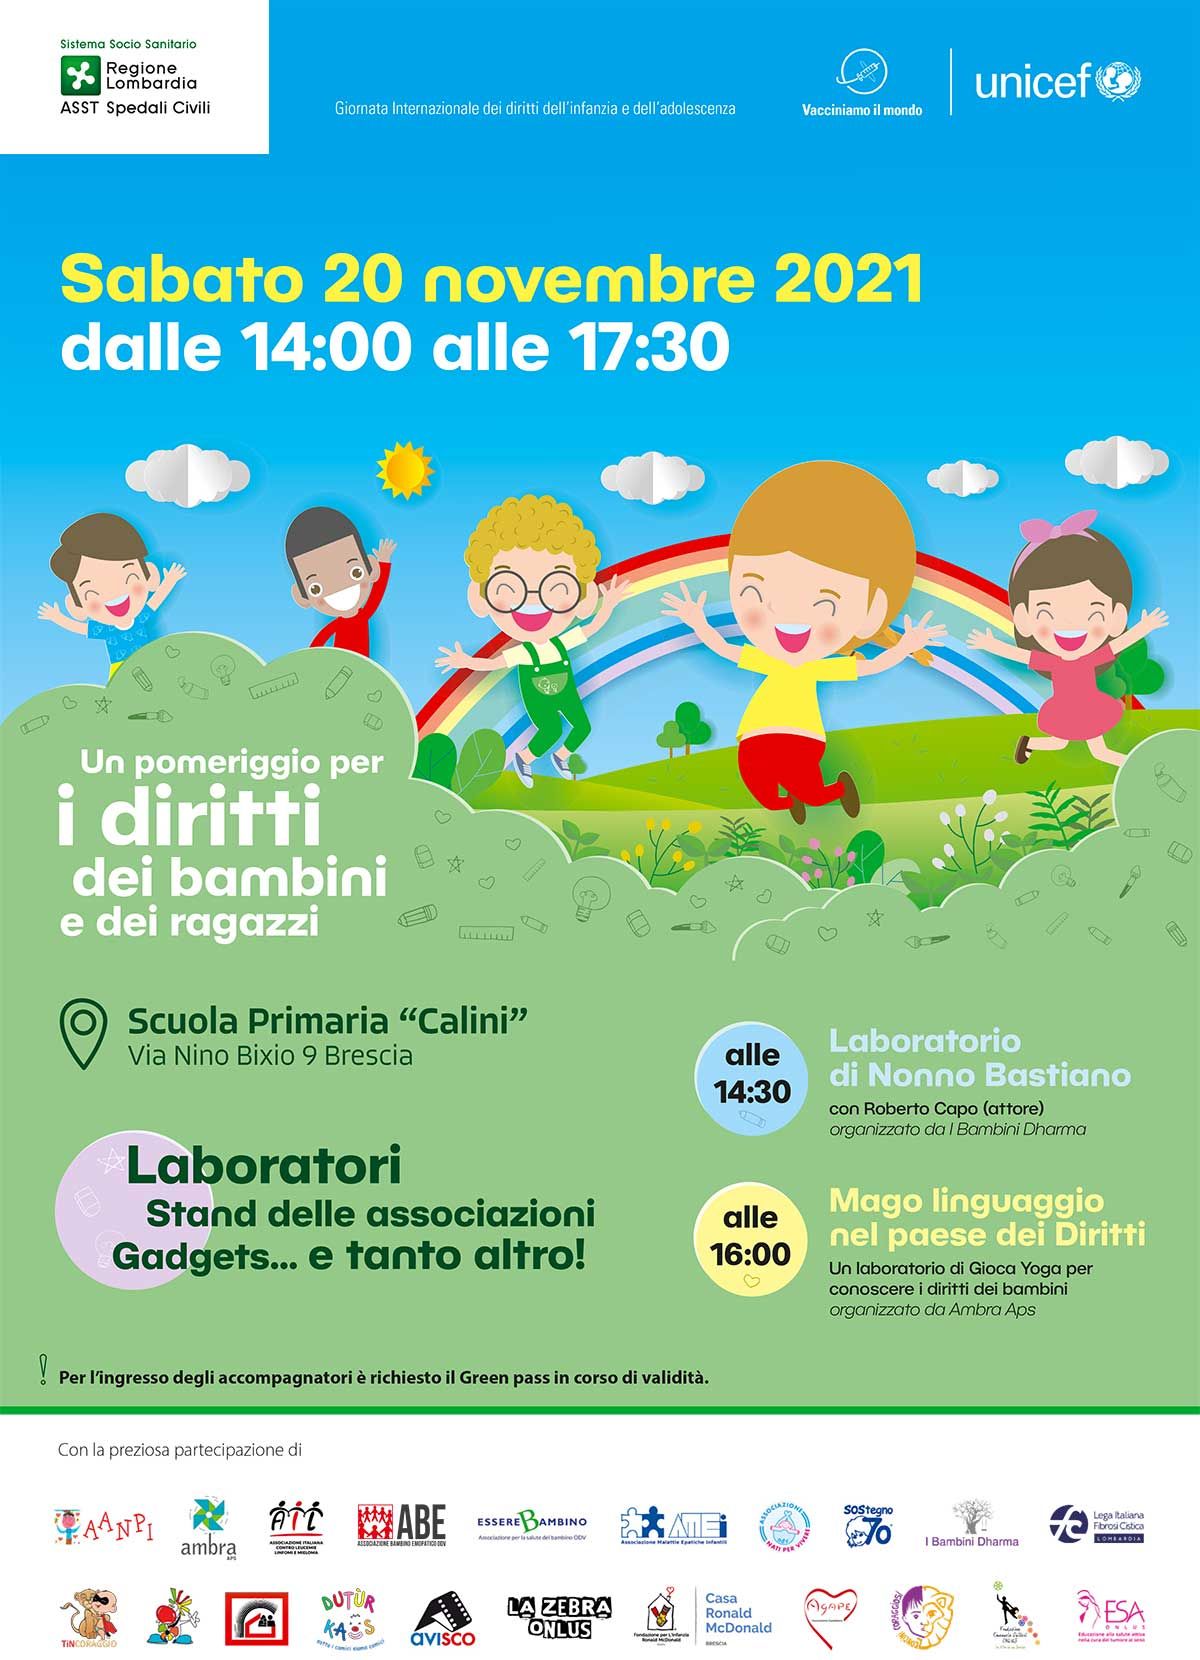 un-pomeriggio-per-i-diritti-bambini-ragazzi-2021